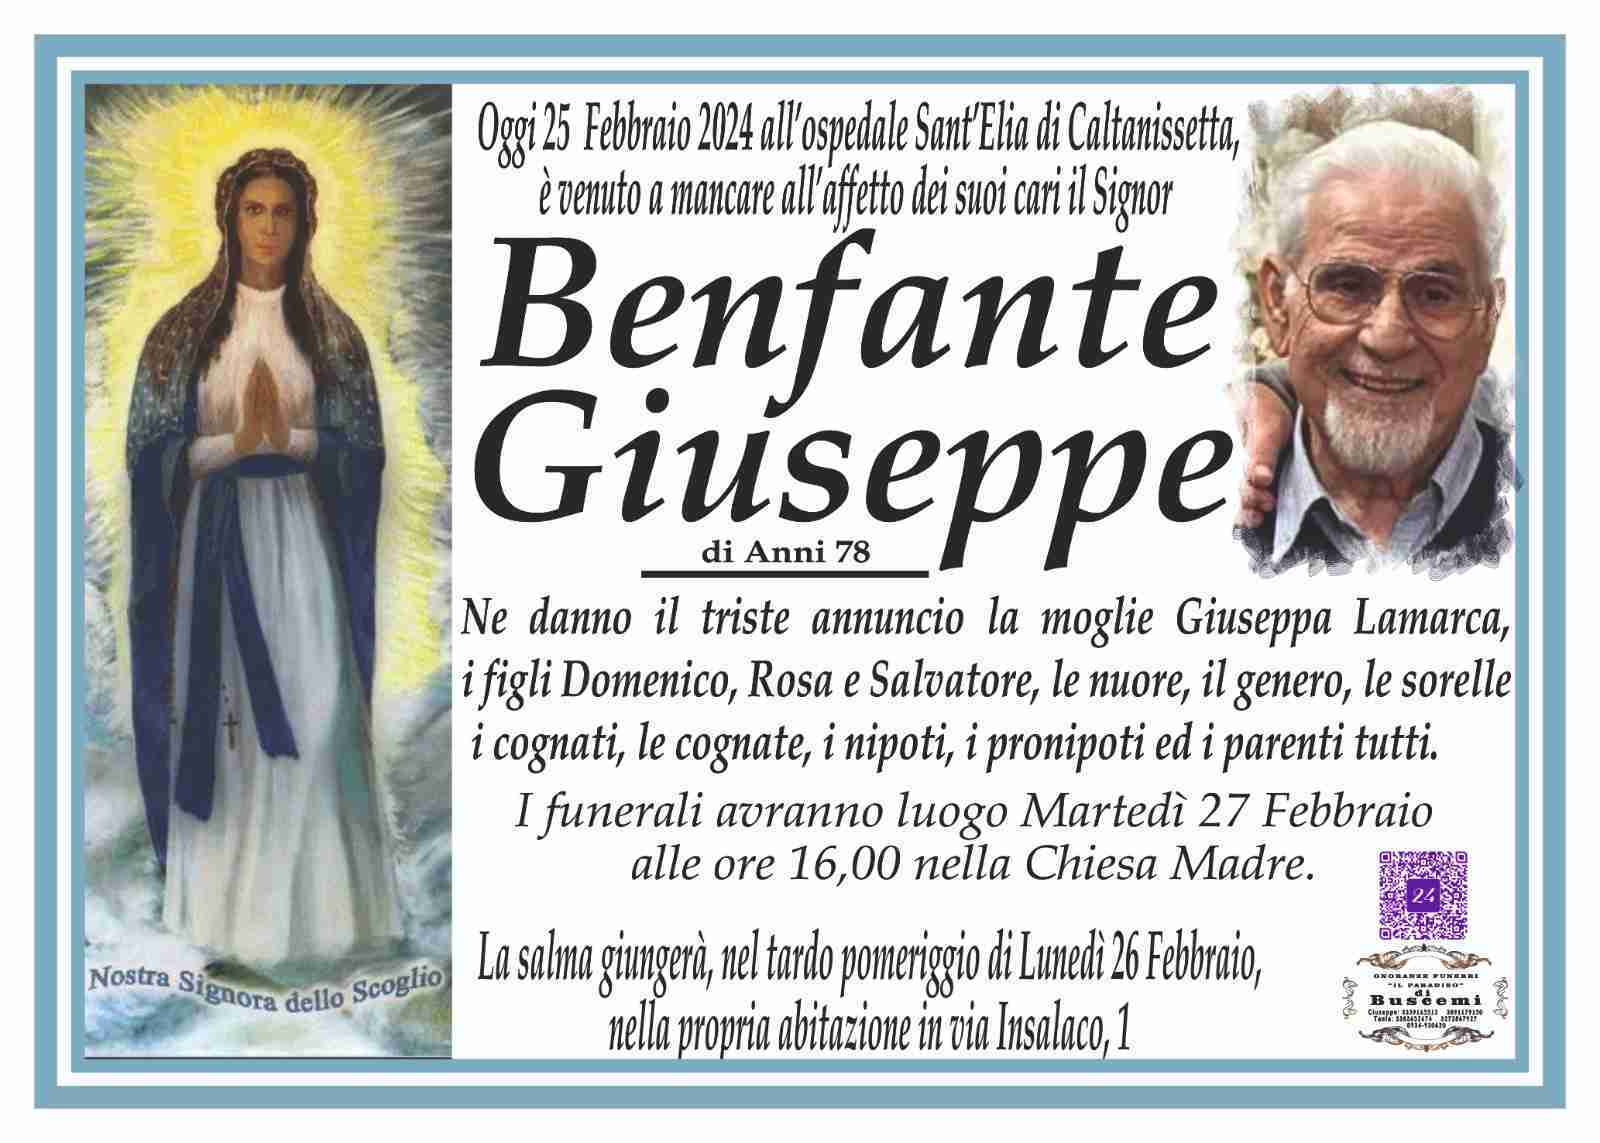 Giuseppe Benfante